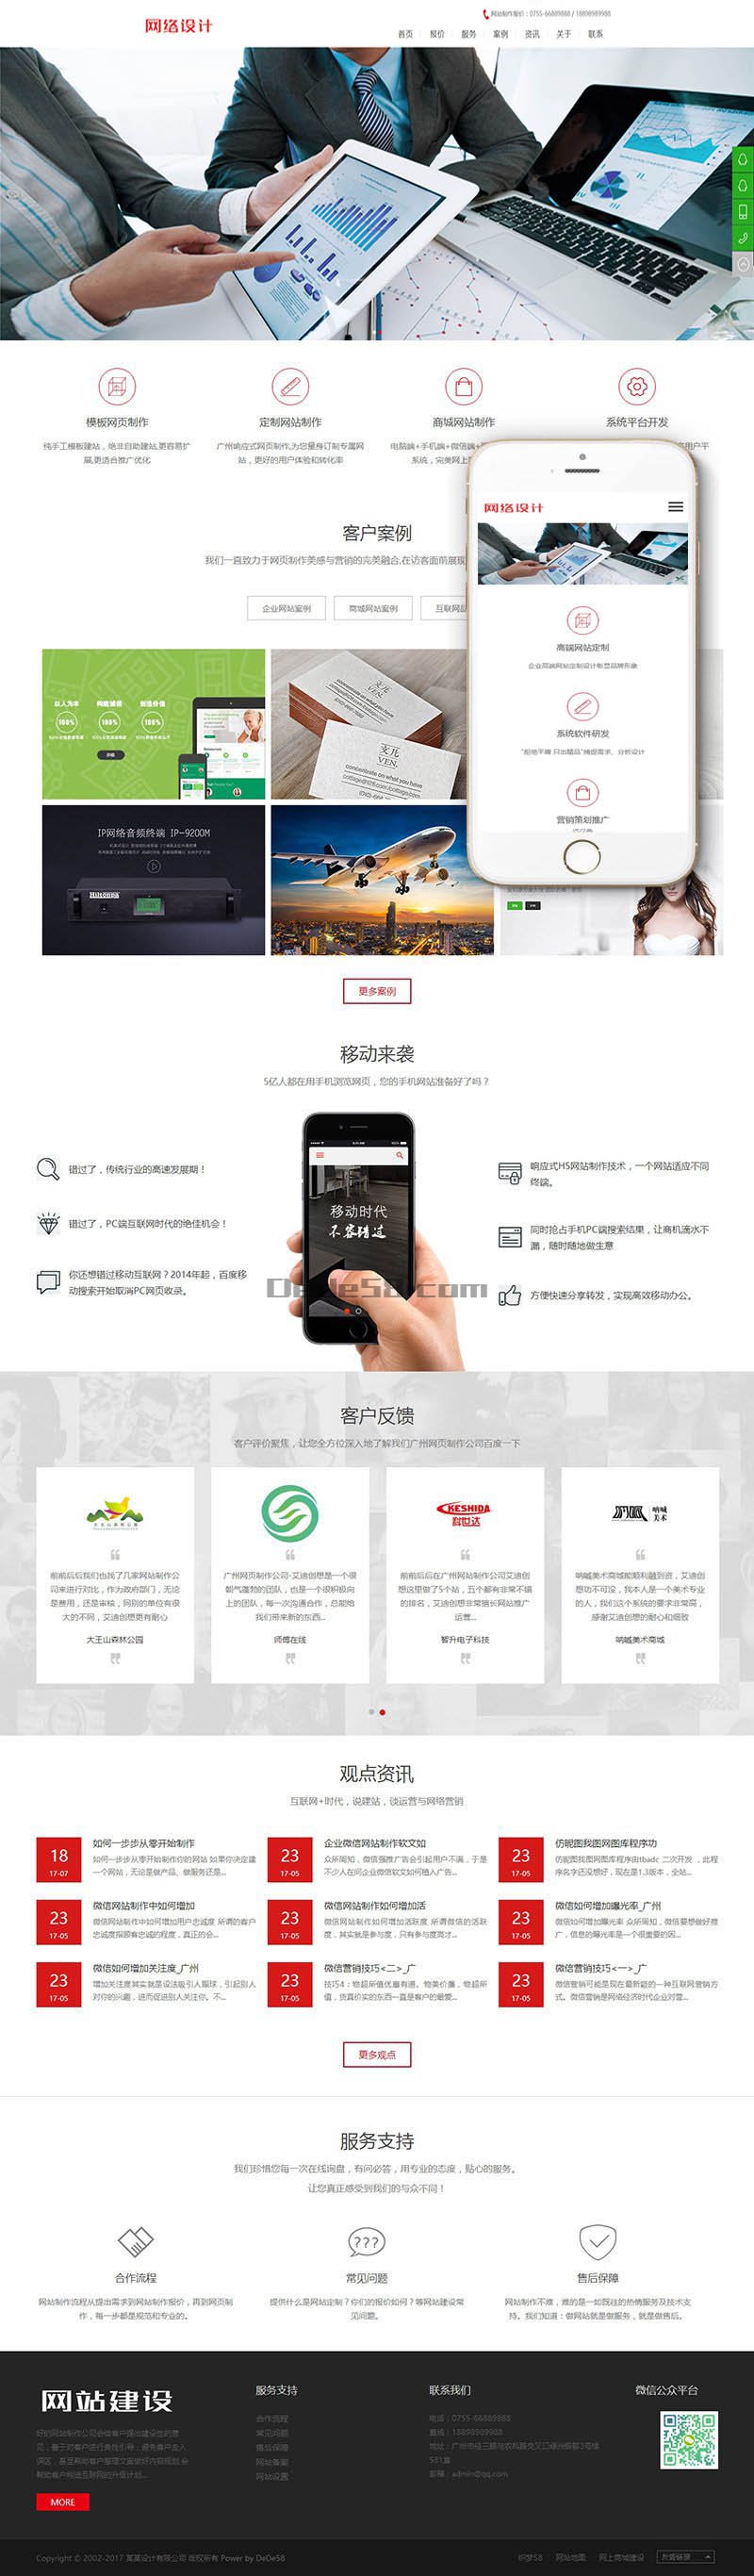 响应式网站网络设计公司织梦模板(自适应手机端) 第2张